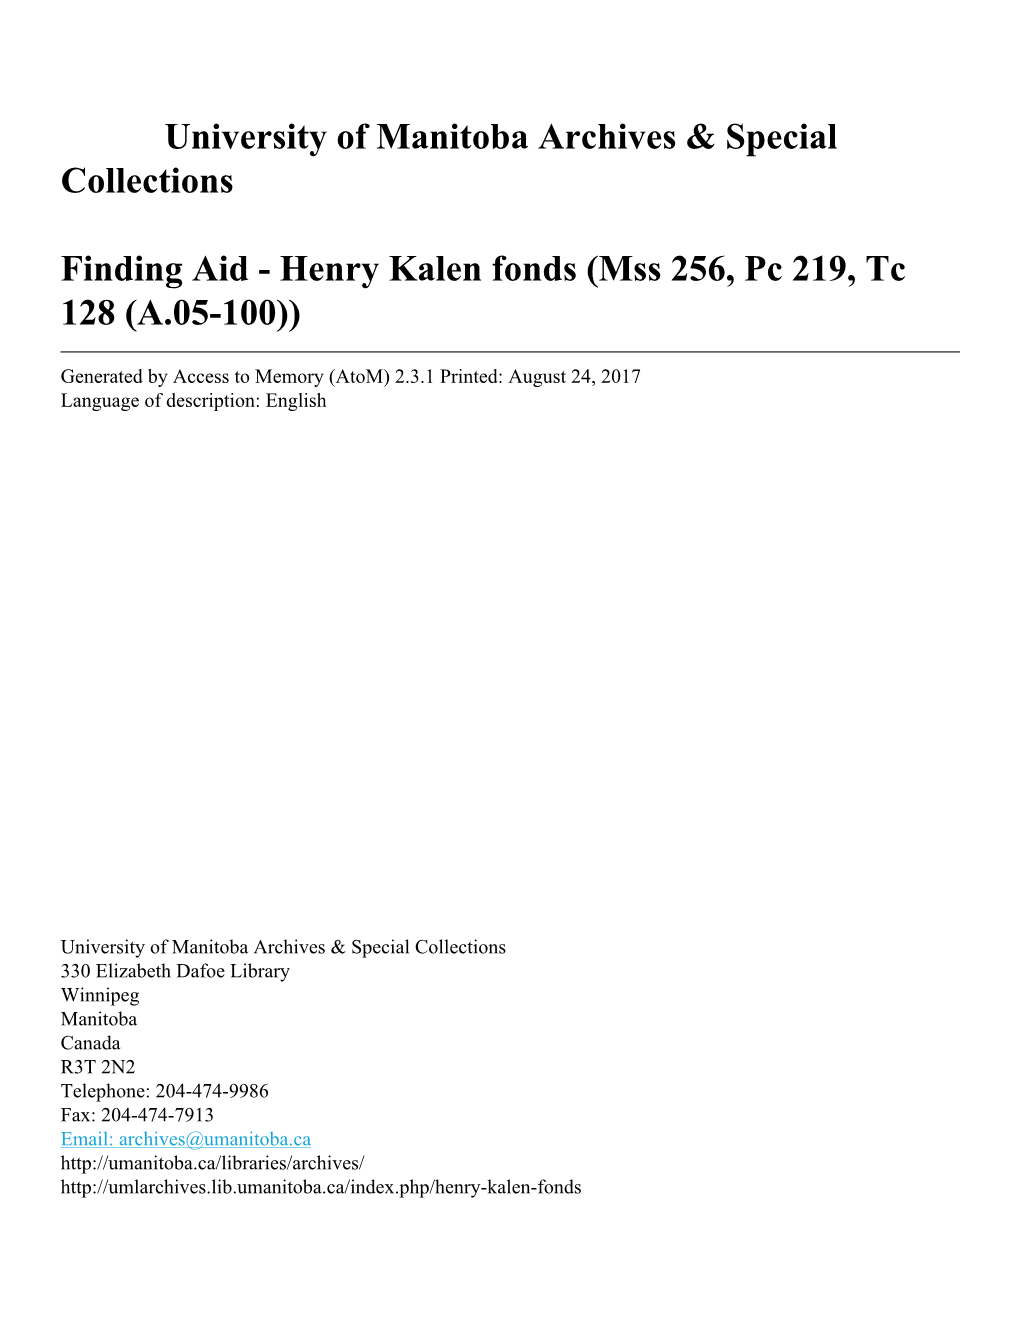 Henry Kalen Fonds (Mss 256, Pc 219, Tc 128 (A.05-100))